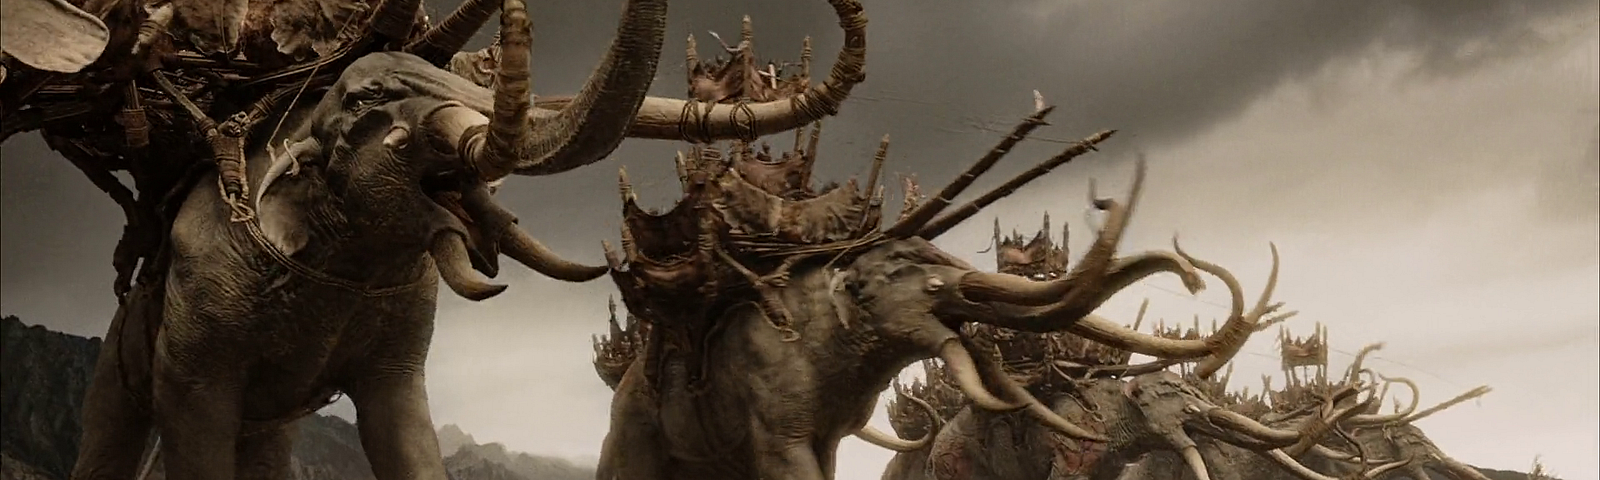 Elefantes gigantes cheios de presas e com cabines no dorso avançam sobre um exército. Cena do filme O Senhor dos Anéis: O Retorno do Rei